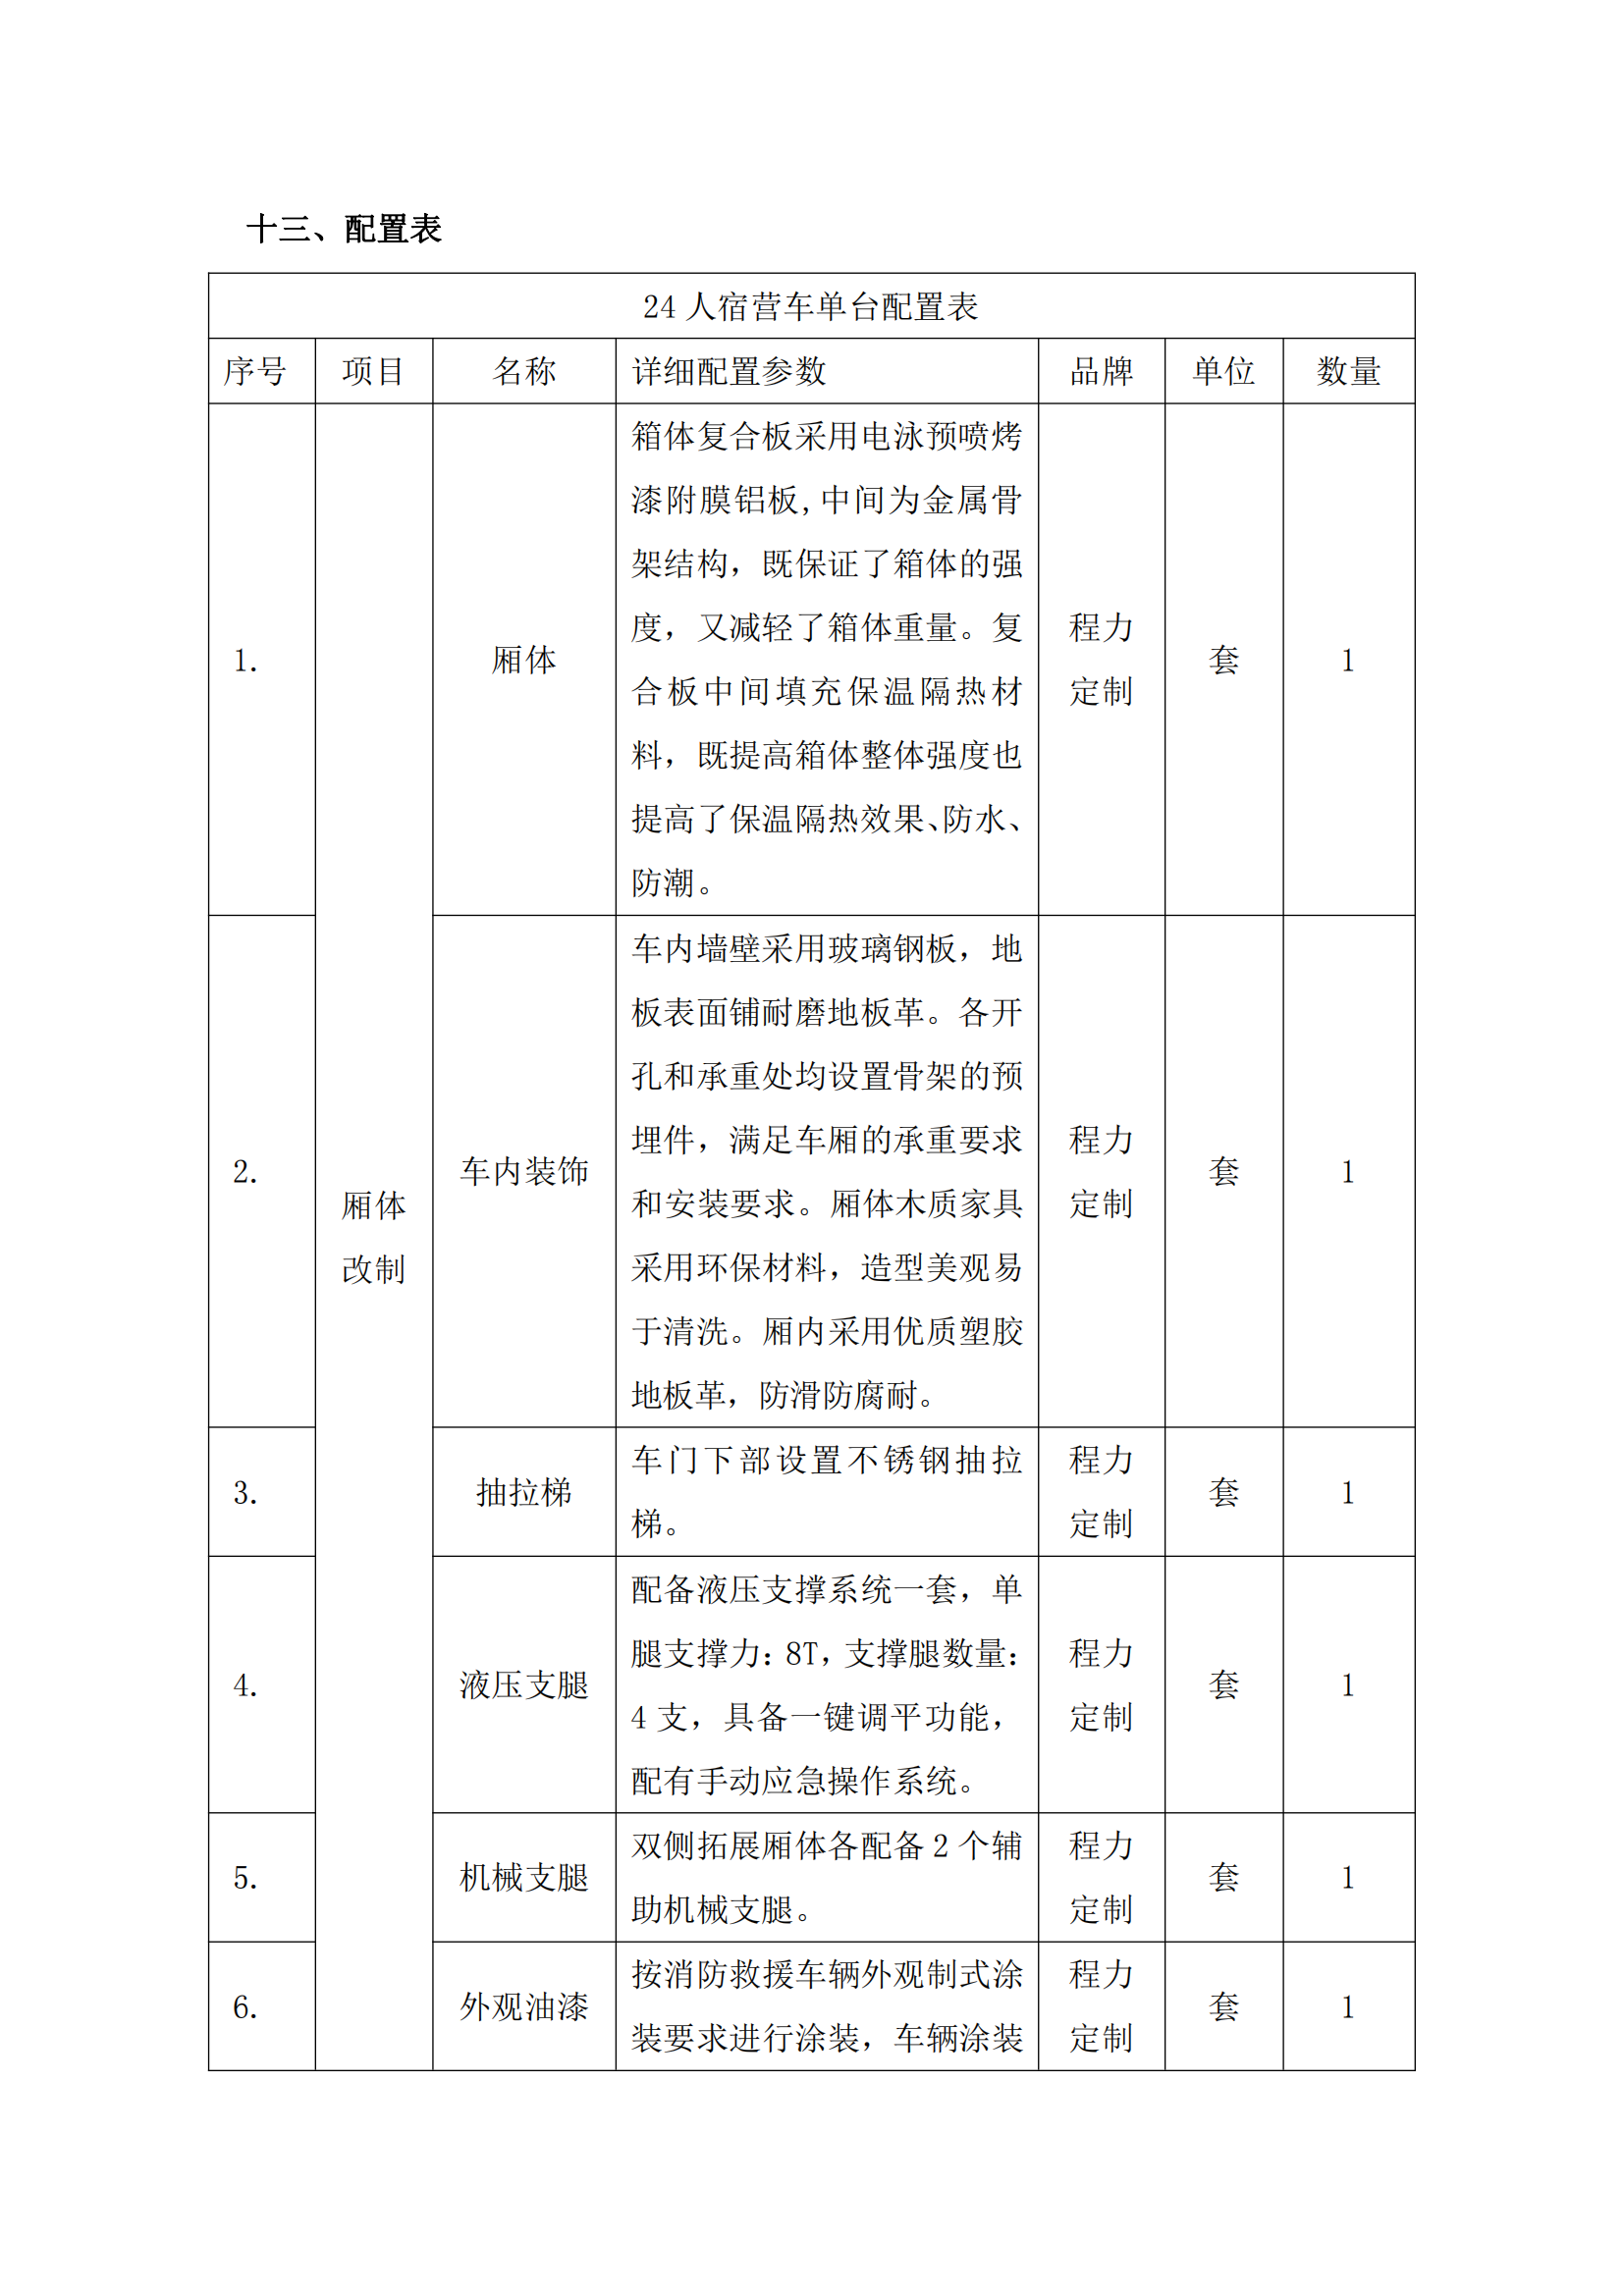 第二批次 宿营车 24人技术规格书 汕德 卡(金广)_80.png